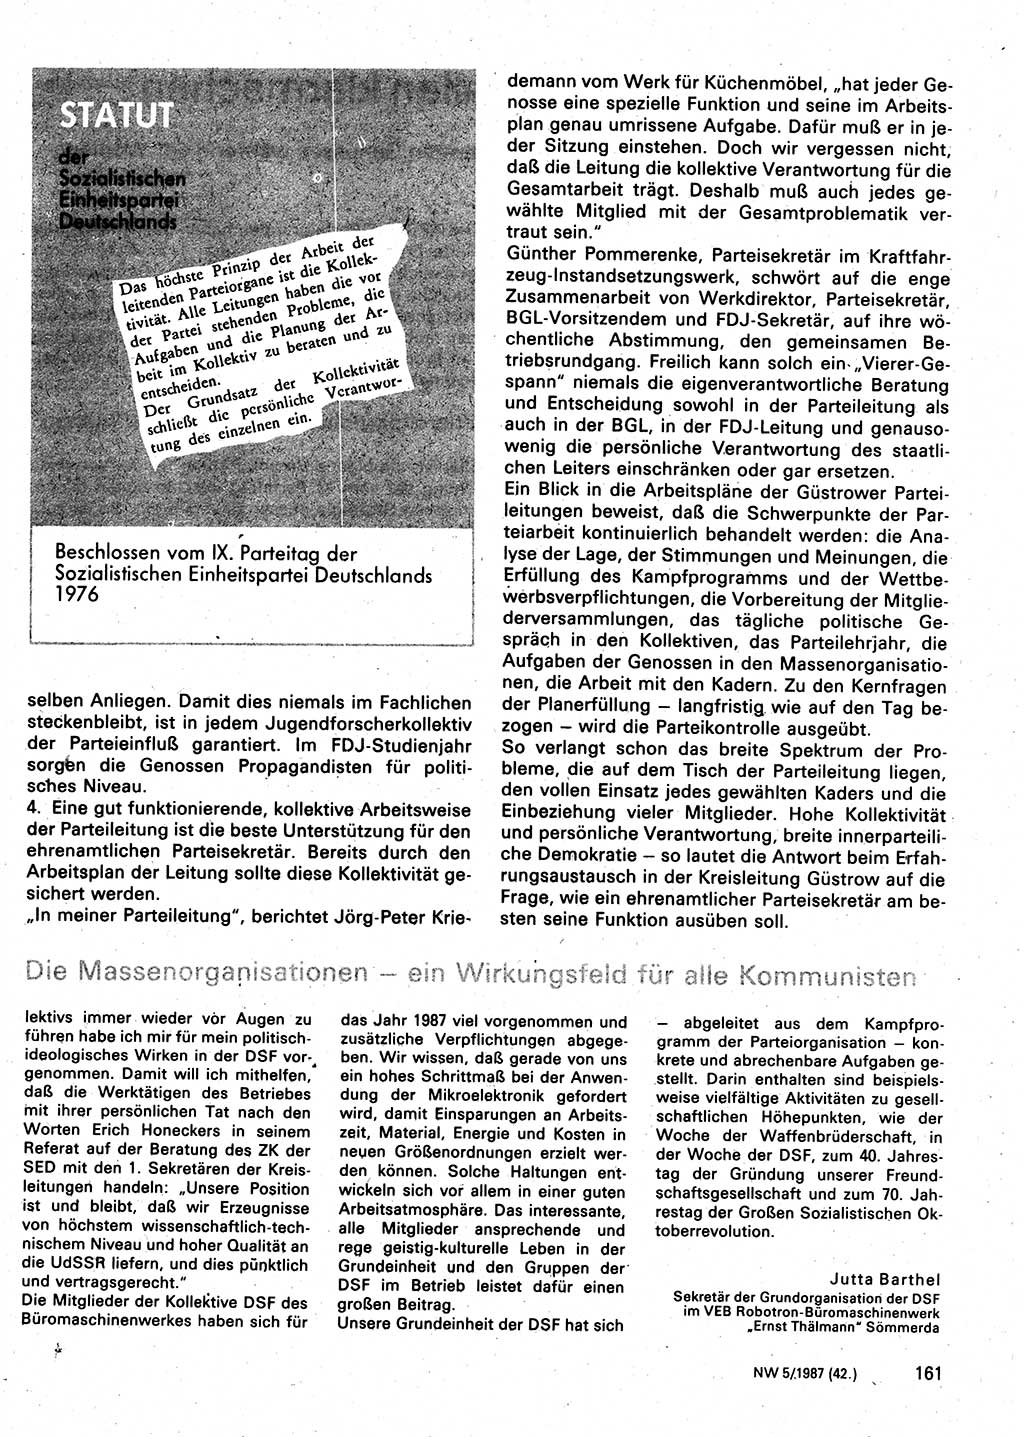 Neuer Weg (NW), Organ des Zentralkomitees (ZK) der SED (Sozialistische Einheitspartei Deutschlands) für Fragen des Parteilebens, 42. Jahrgang [Deutsche Demokratische Republik (DDR)] 1987, Seite 161 (NW ZK SED DDR 1987, S. 161)